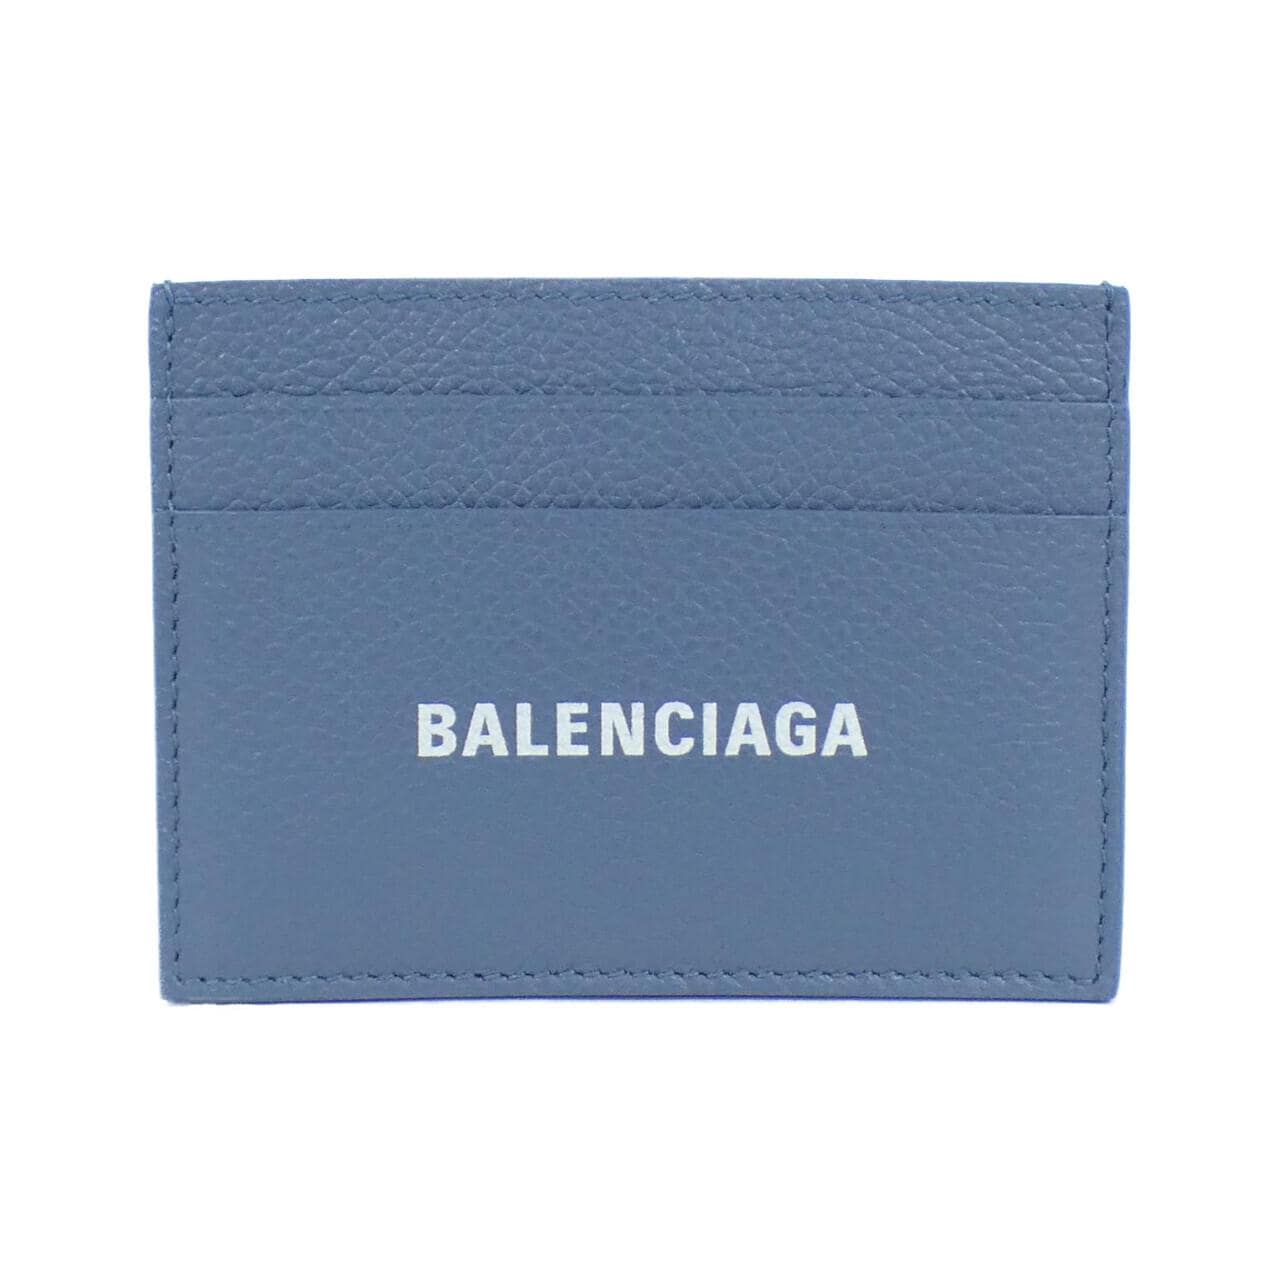 【新品】バレンシアガ CASH CARD HOLDER 594309 1IZI3 カードケース